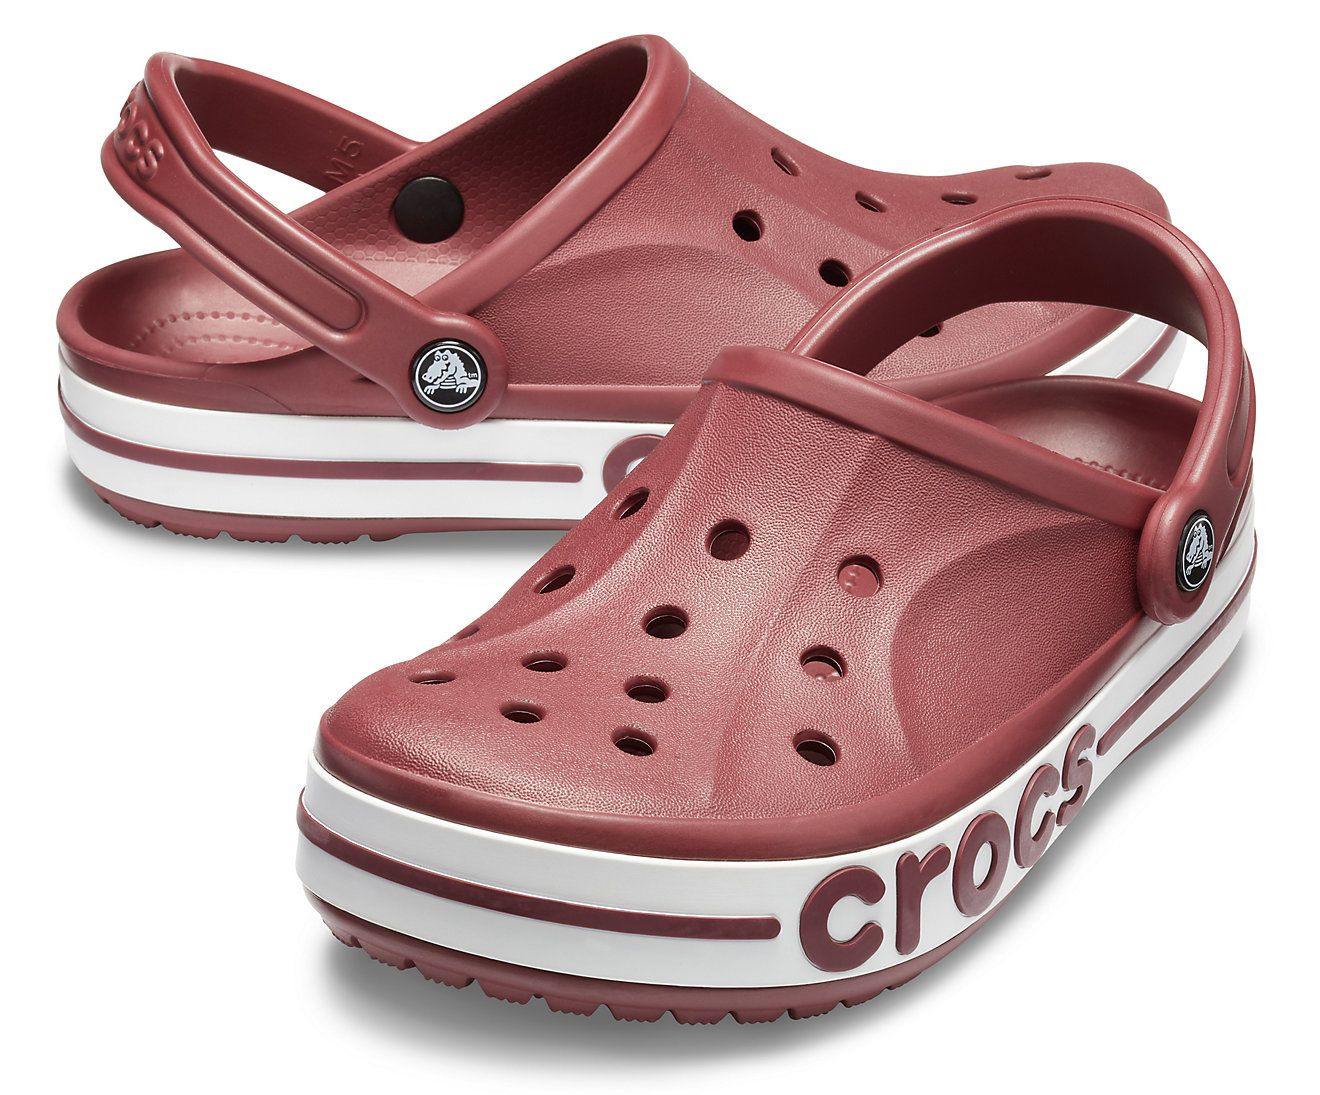 crocs authentic